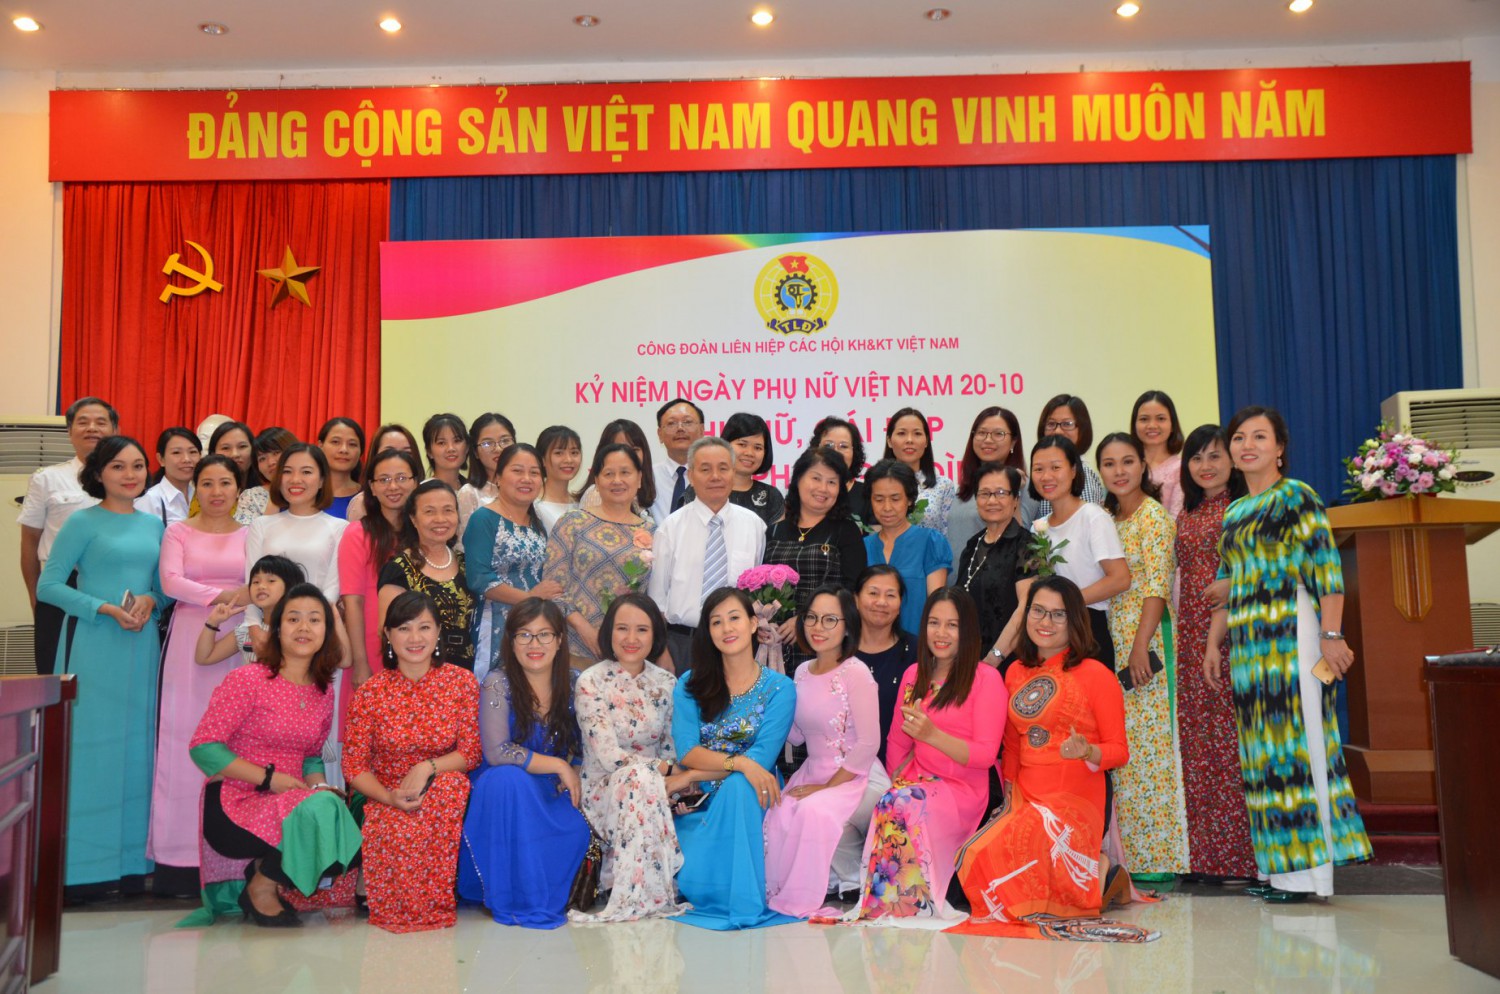 Phụ nữ Liên hiệp Hội Việt Nam vì mục tiêu phát huy cái đẹp